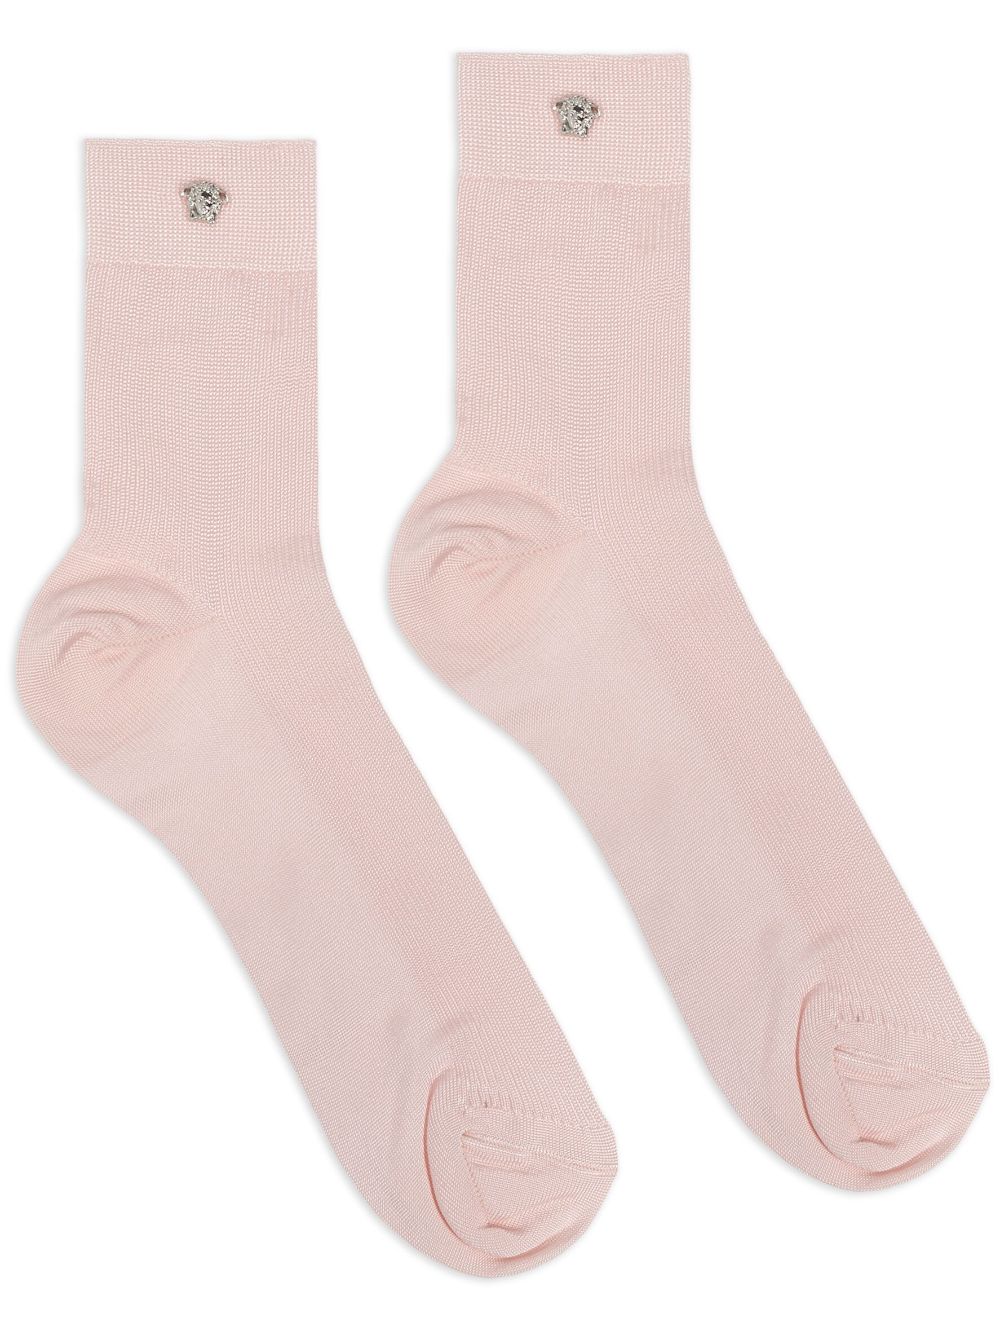 Medusa-plaque knitted socks